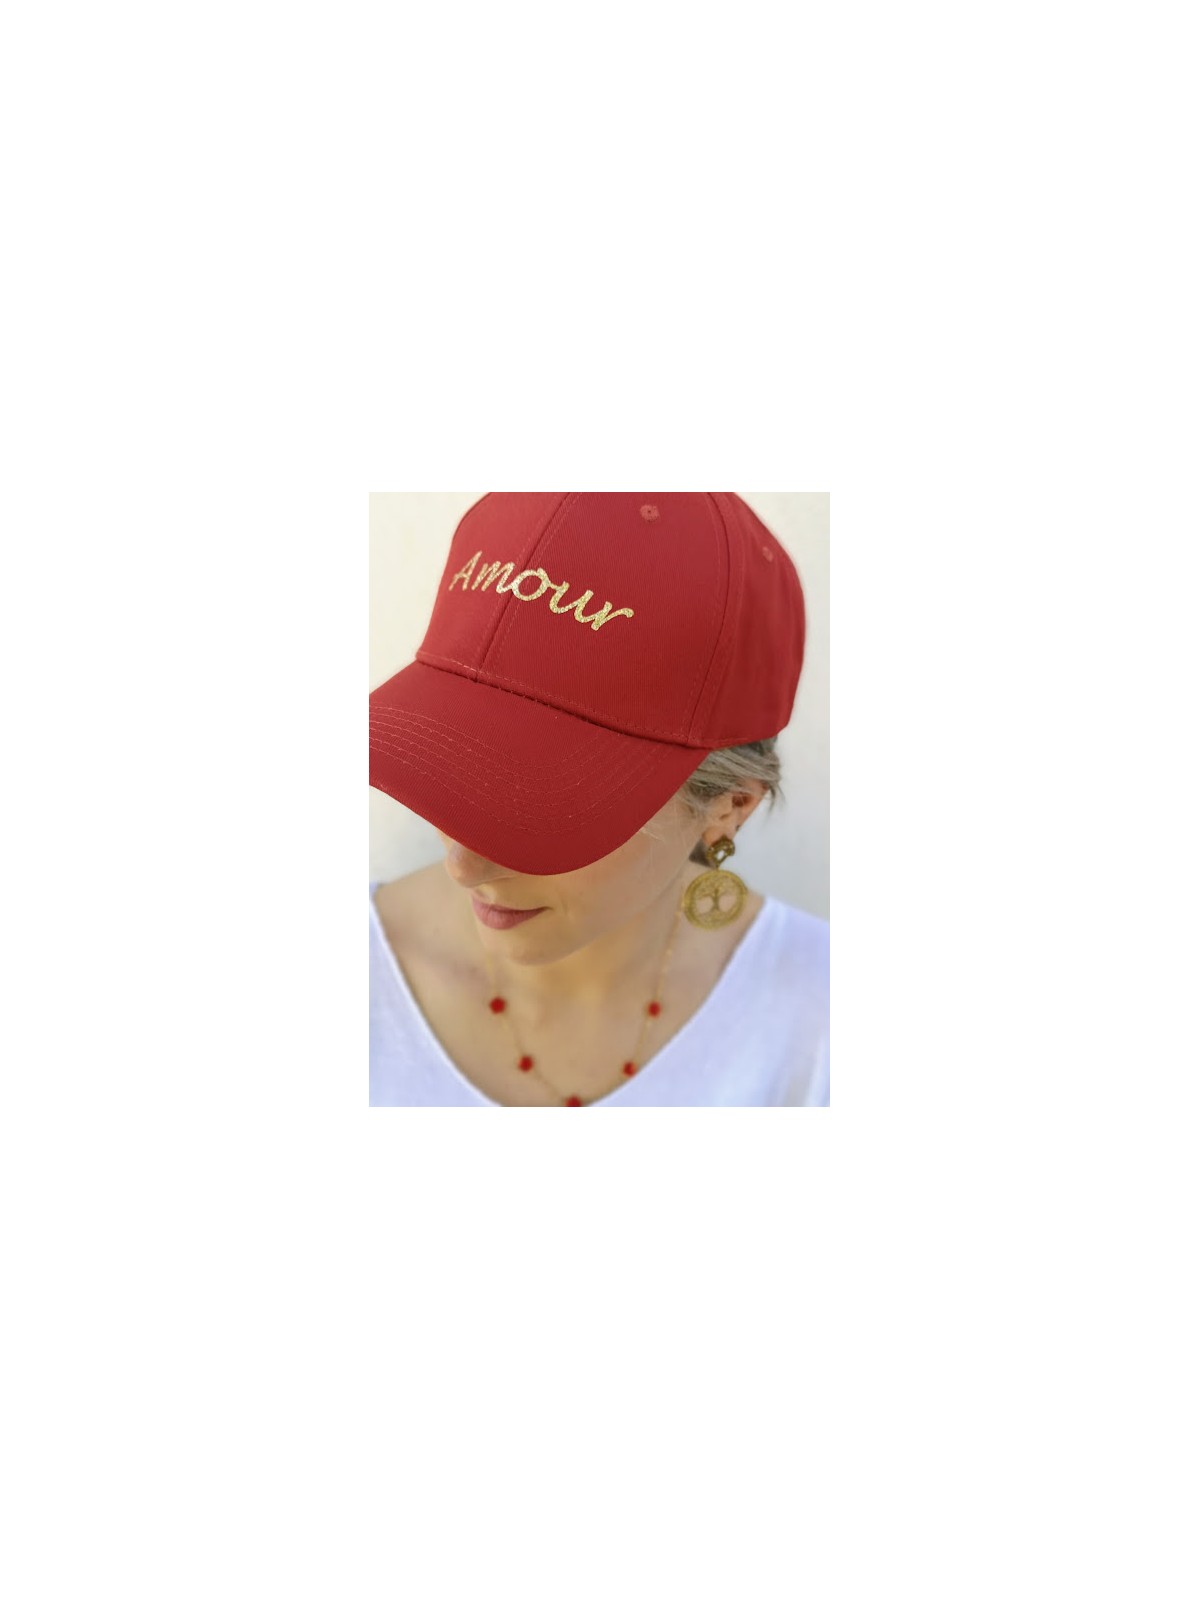 Chapeau-casquette femme avec inscriptions dorées | 3 vue de haut | Tilleulmenthe boutique de mode femme en ligne